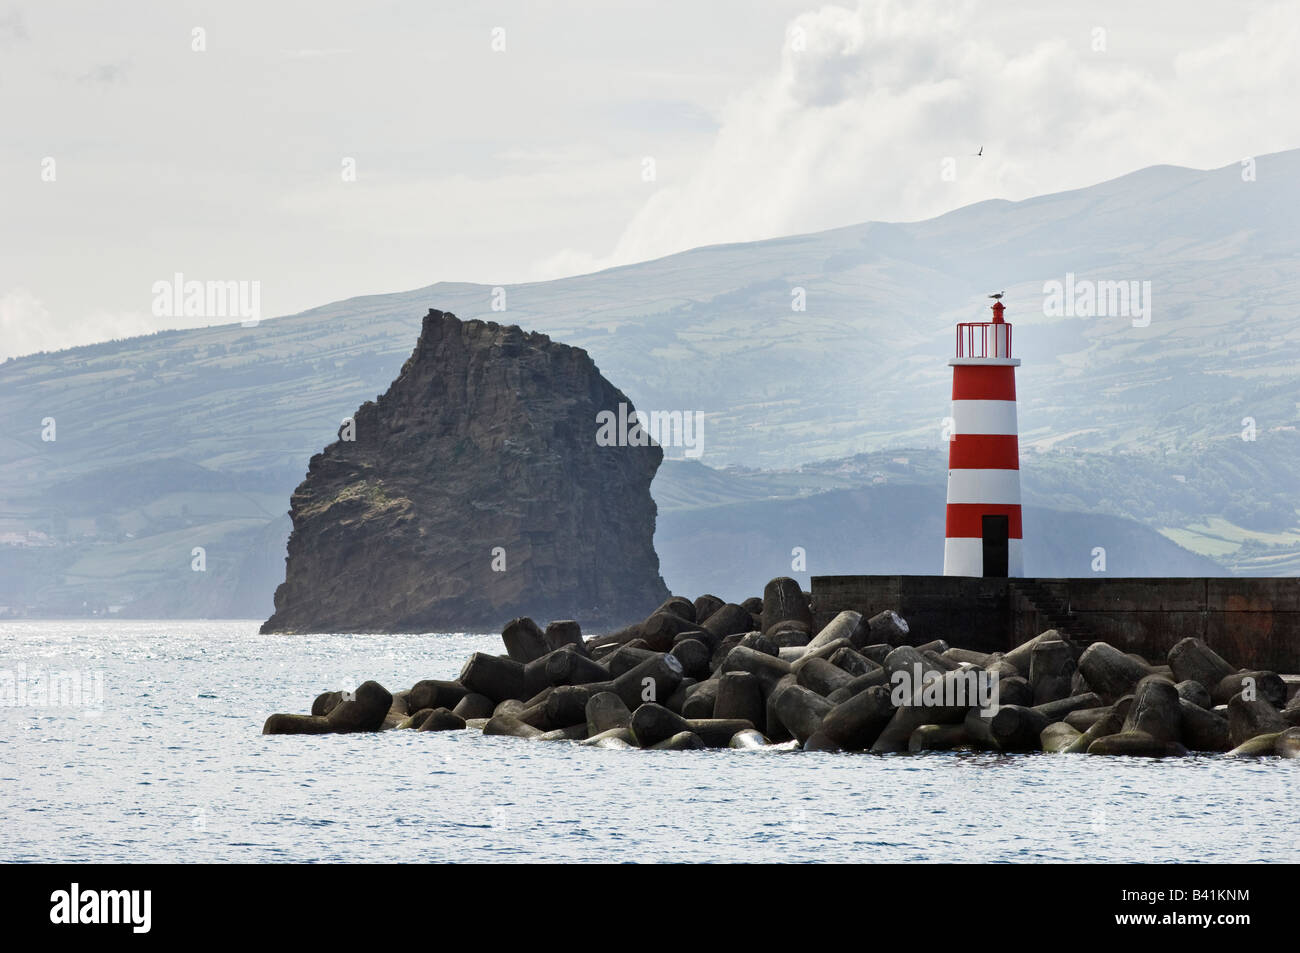 Tipp von der Anlegestelle in den Kanal zwischen Pico und Faial Inseln Faial Azoren ist im Hintergrund Stockfoto